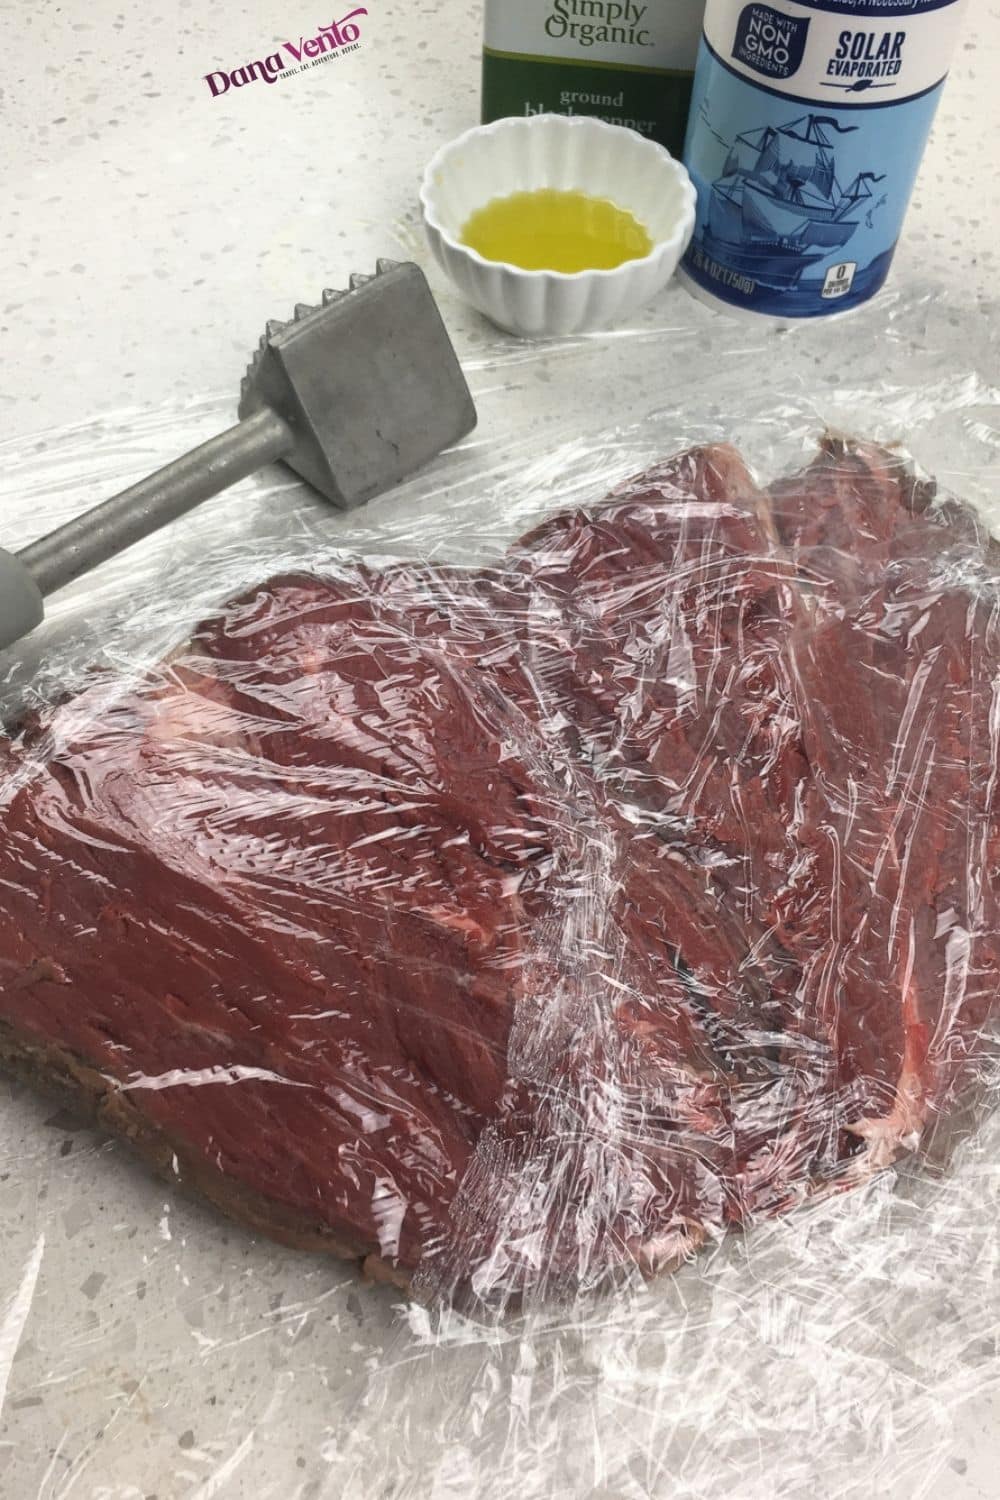 beef tenderloin between plastic wrap and mallet